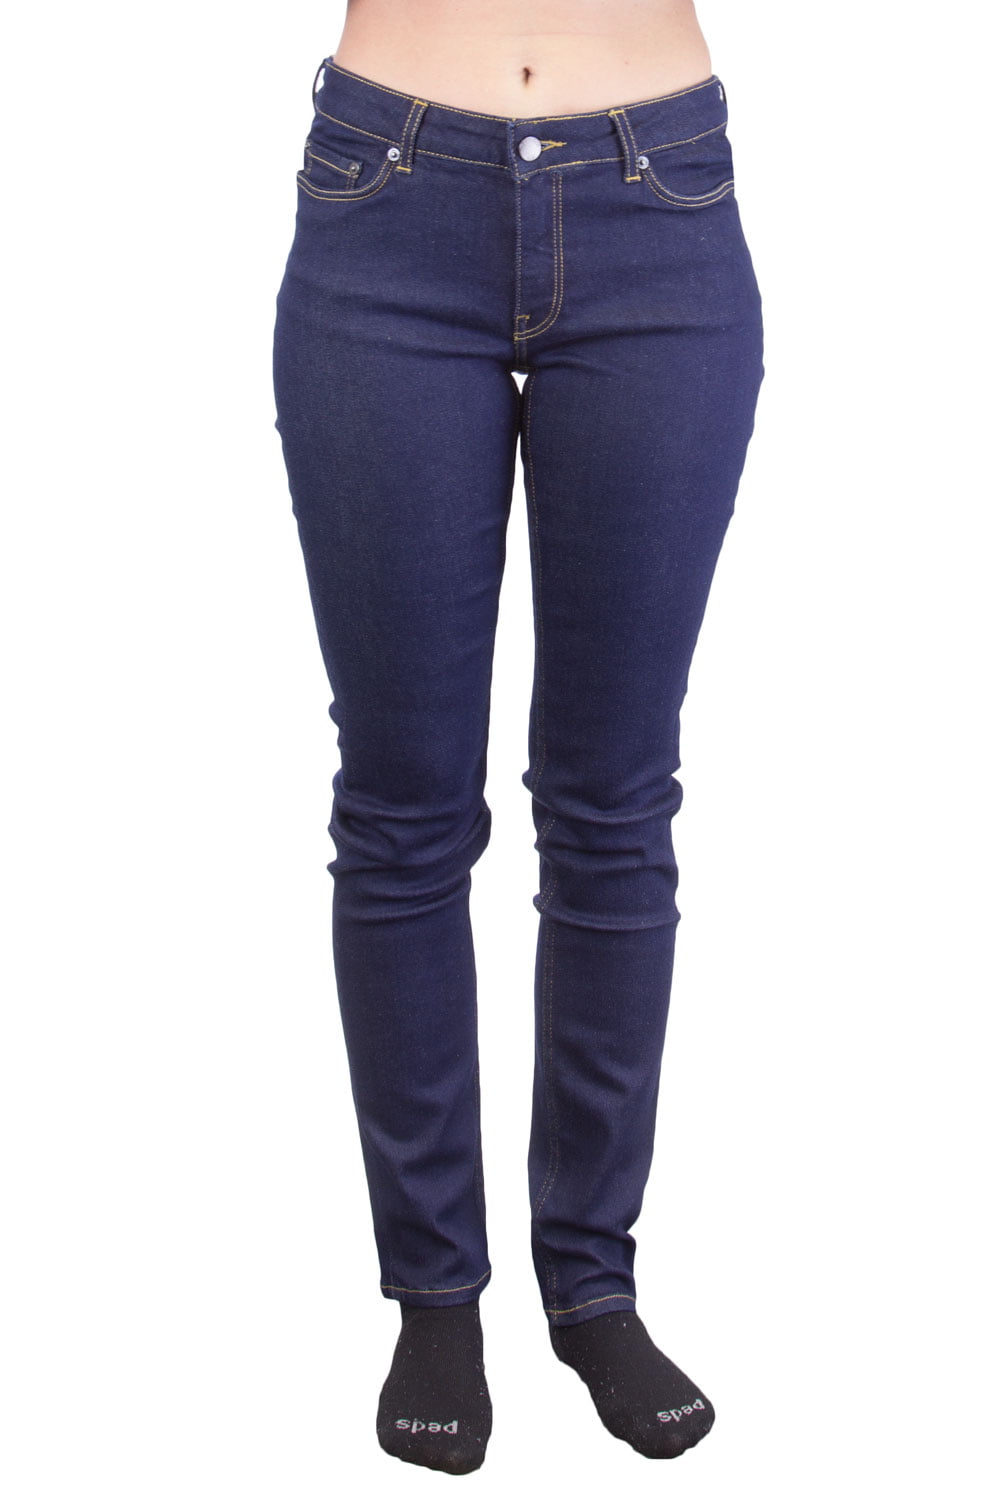 BLK DNM Women's Low Rise Jeans, Bailey Blue, 29x32 - Walmart.com